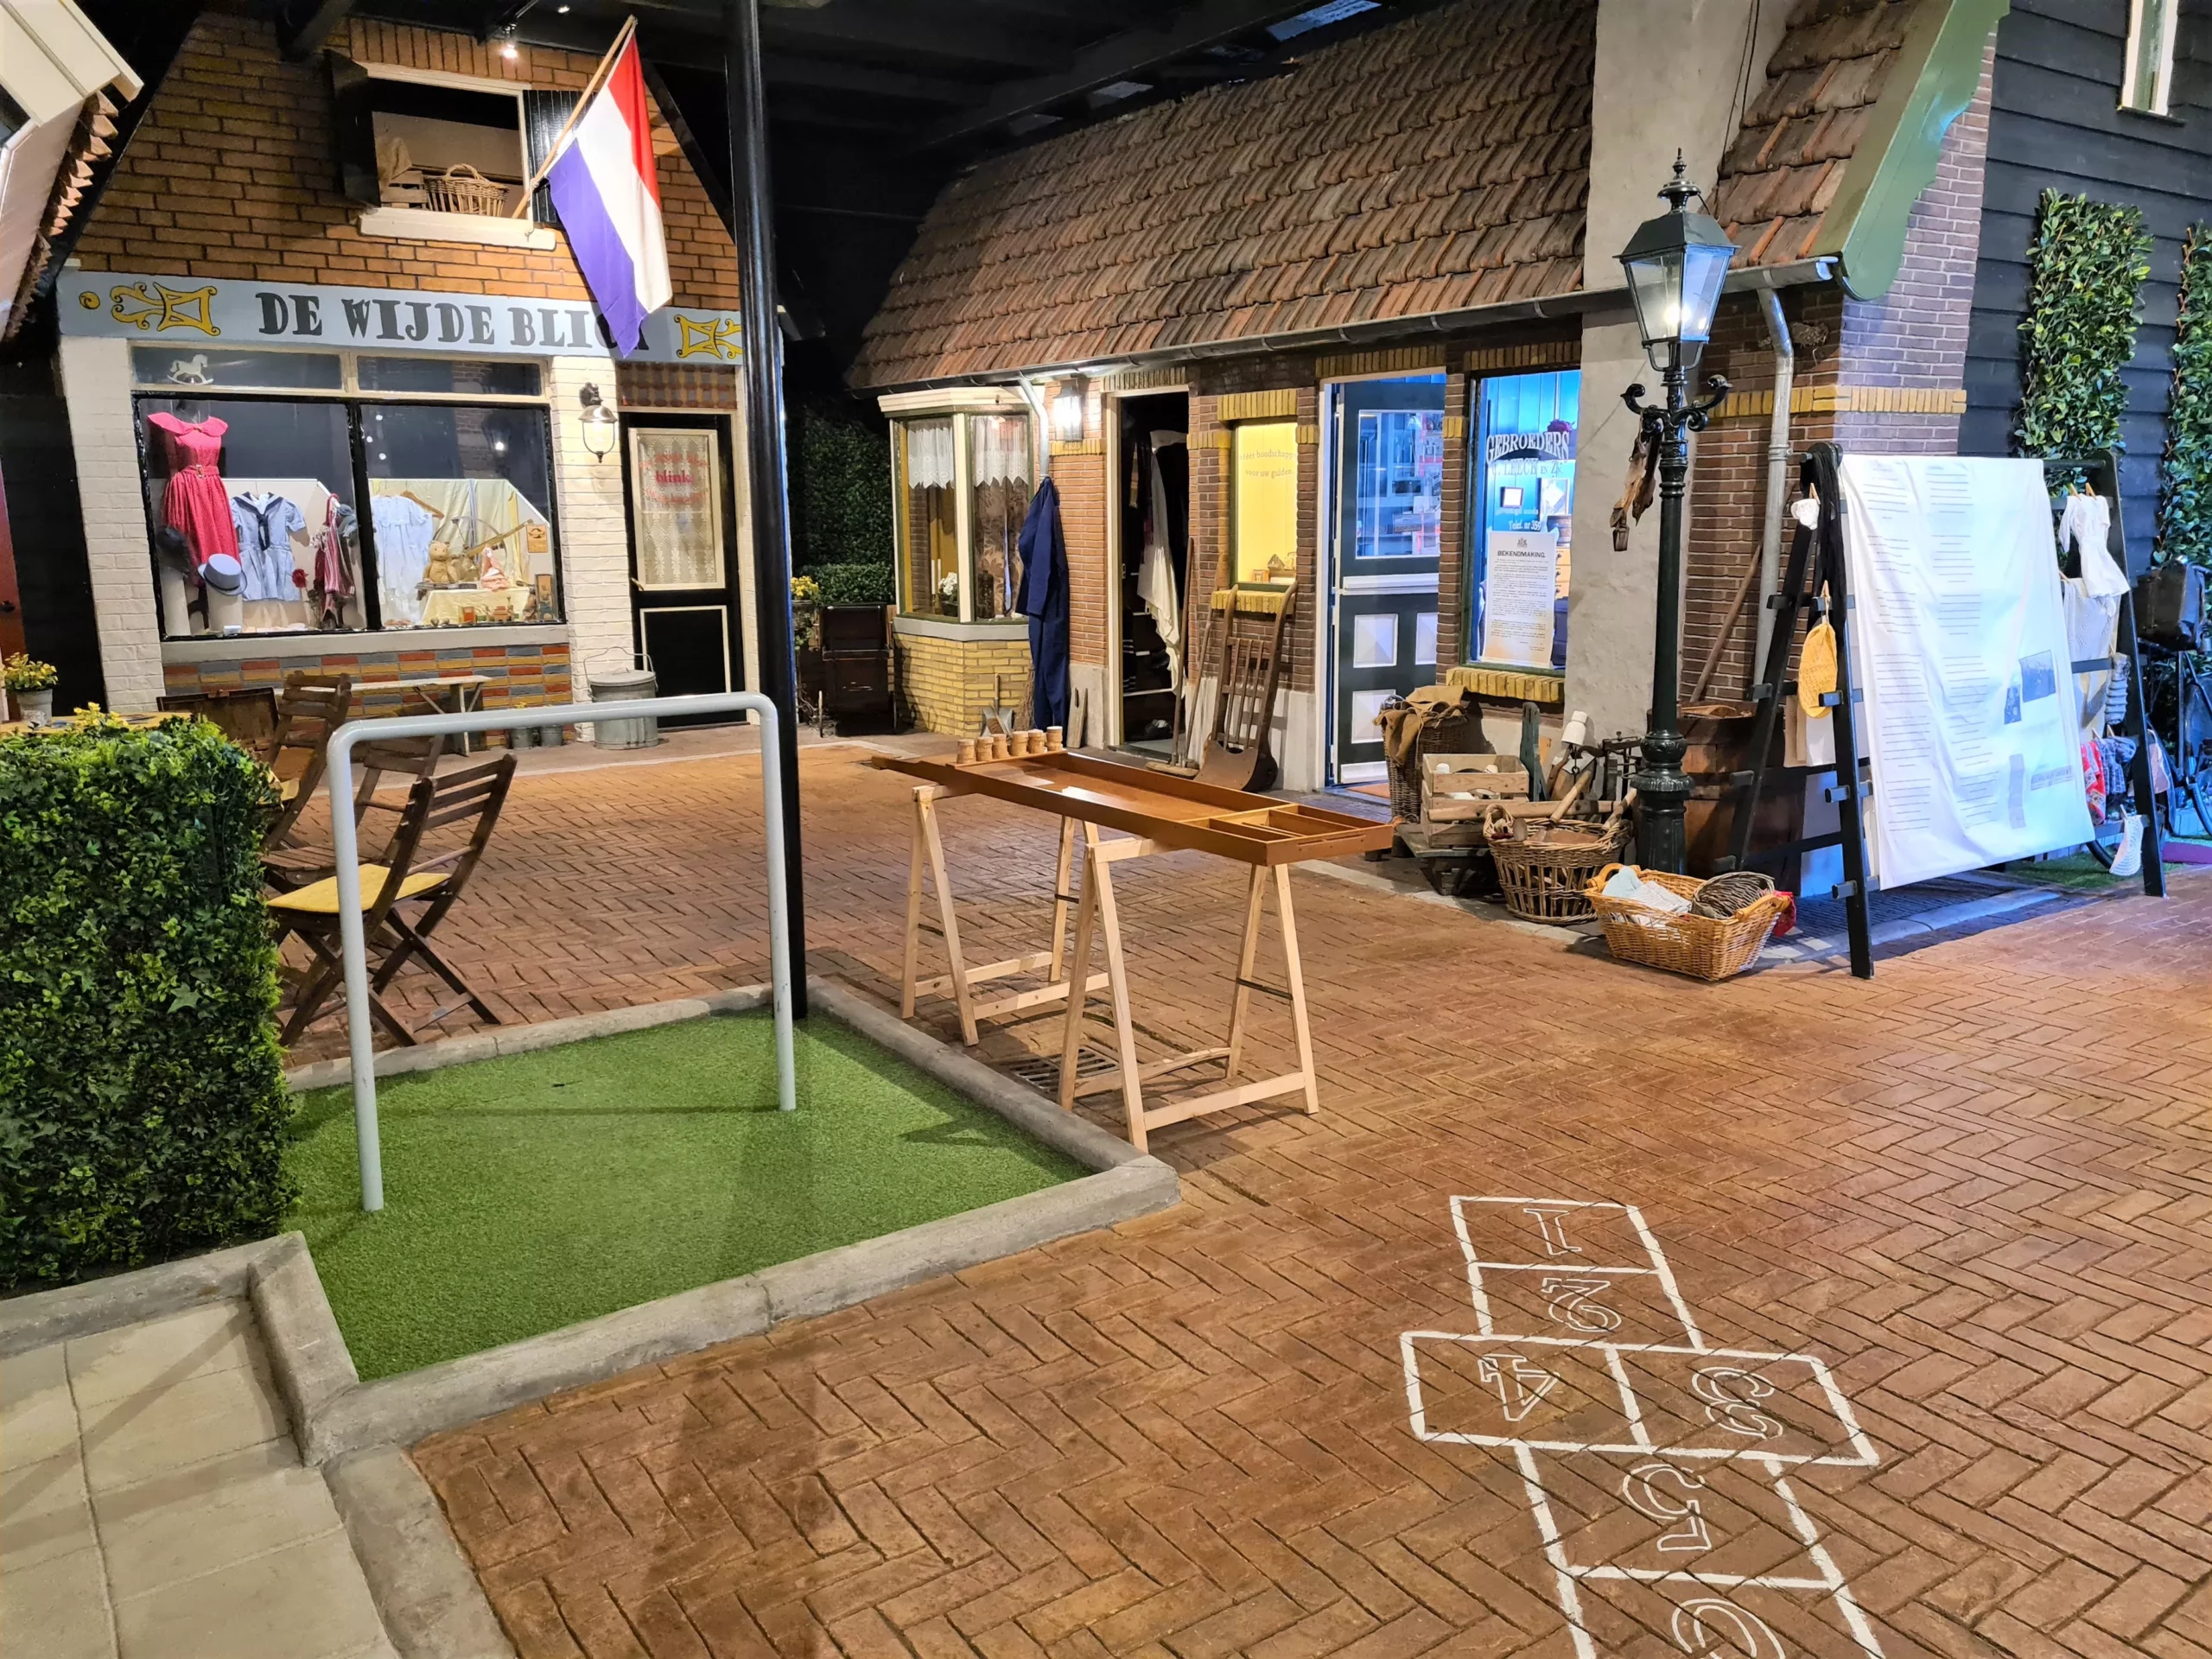 Mooi dorpspleintje met hink-stap-sprong, klimrek en winkeltjes in een overdekt museum over de Tweede Wereldoorlog